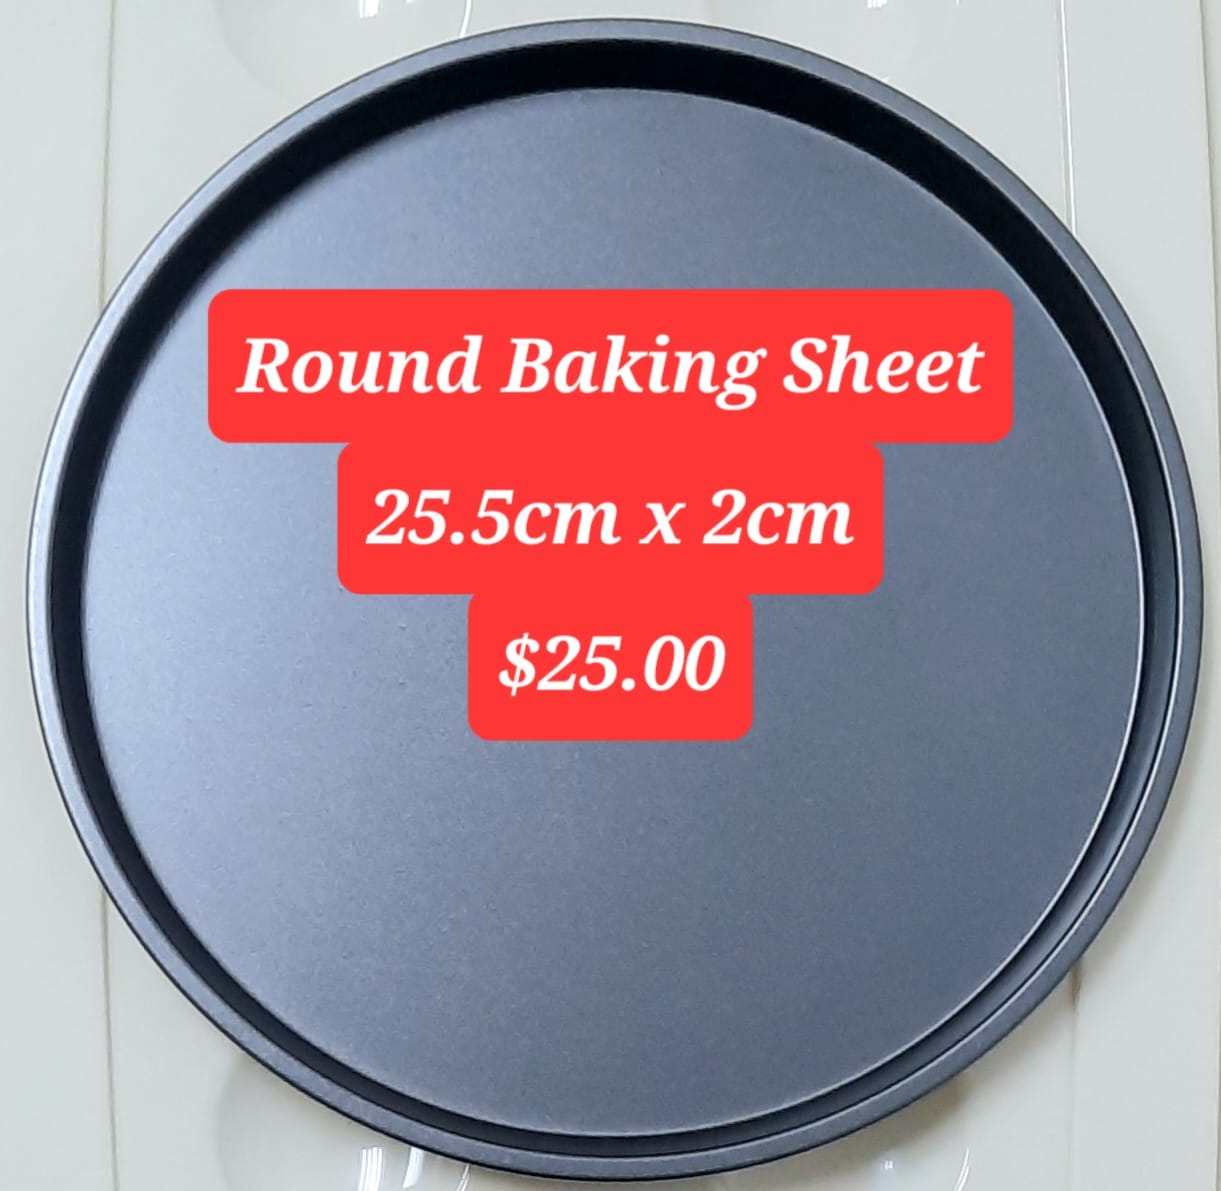 Round baking sheet